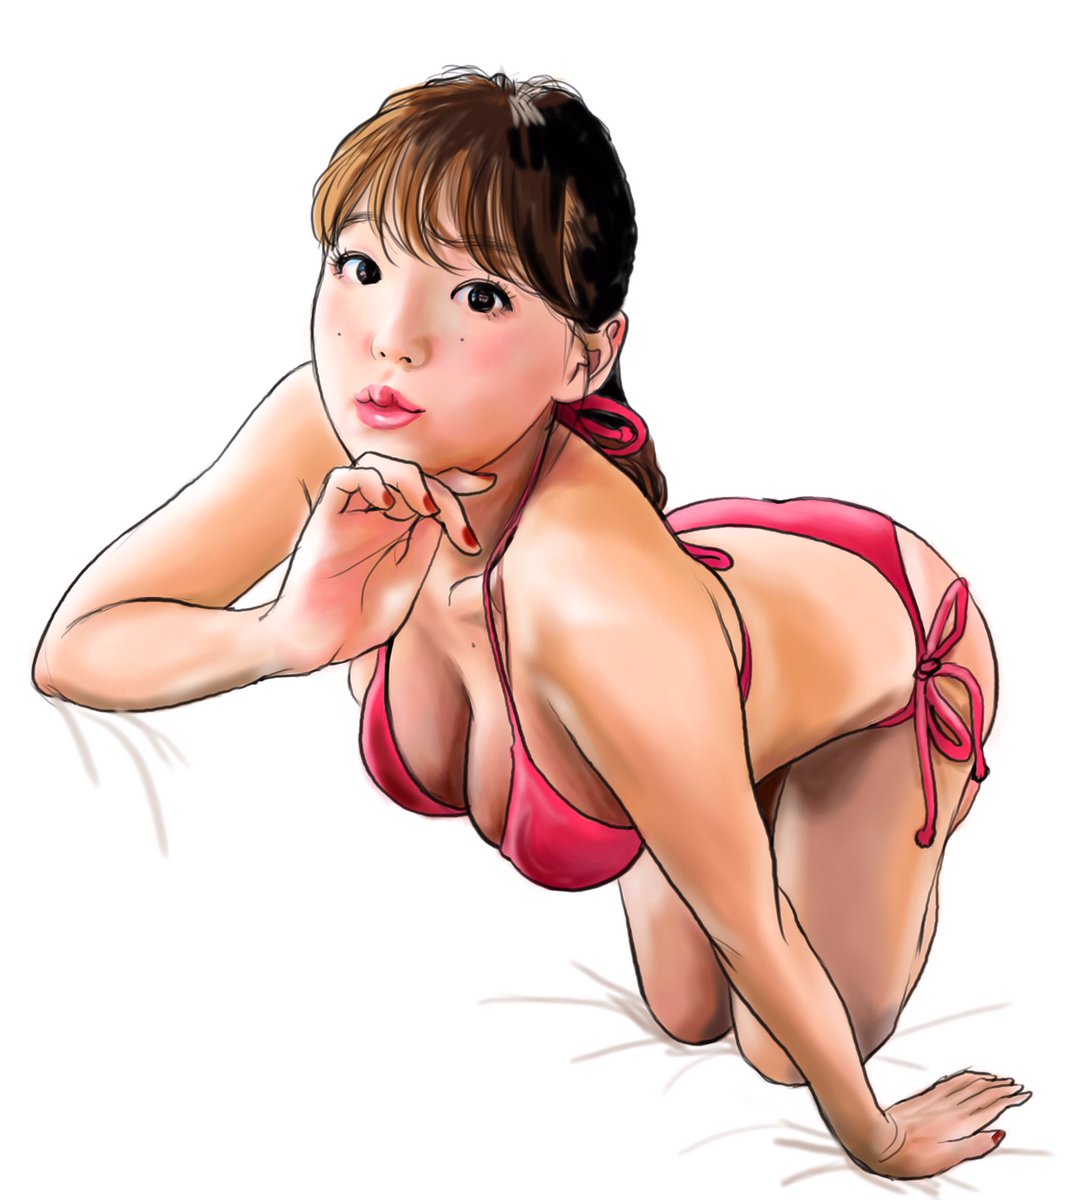 てらりん Ar Twitter 篠崎愛さん Shinozakiai 226 似顔絵 イラスト グラビアアイドル 歌手 篠崎愛 Caricature Illustration Portrait Drawing Bikinimodel Singer Aishinozaki T Co Zjz38osp9p